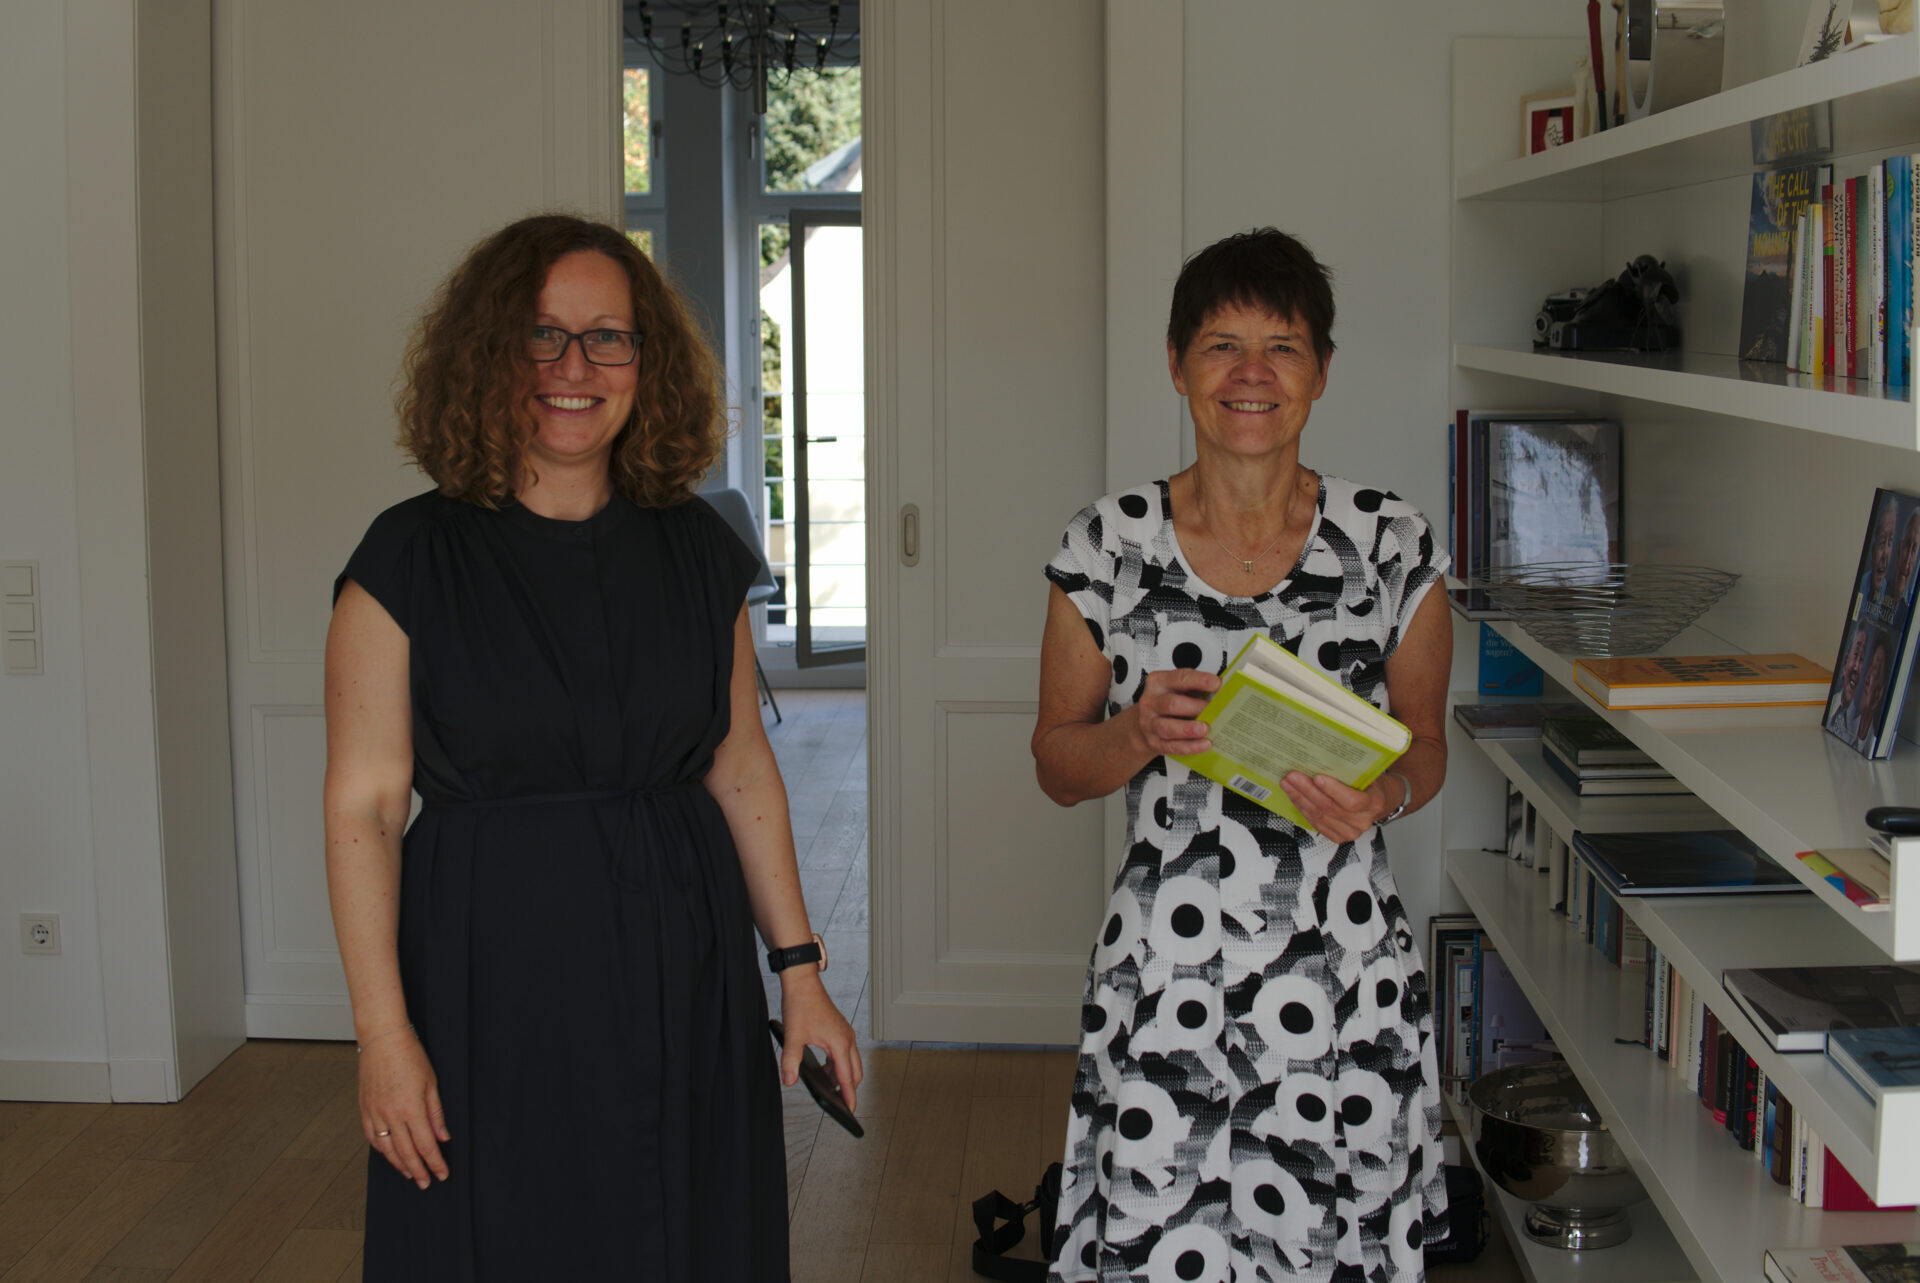 Katja Schumacher, eine Frau mit schulterlangen Locken und freundlichem Lächeln steht neben Angela Lechner, eine Frau mit kurzen dunklen Haaren, offenem Lächeln und einem Buch in der Hand. Neben ihnen steht ein Bücherregal. Beide Frauen tragen Kleider.